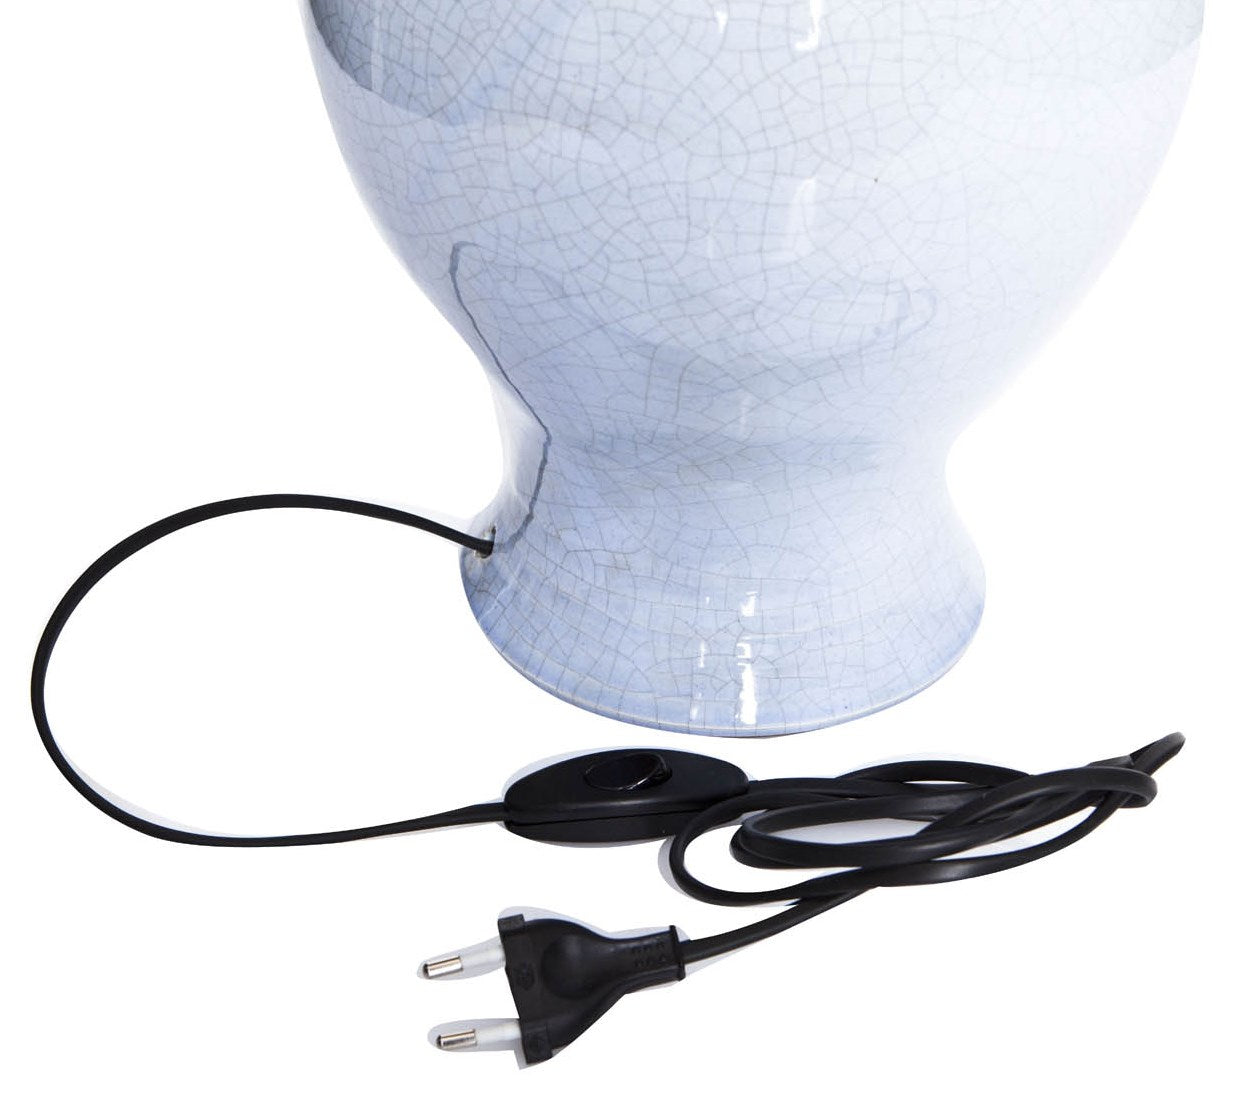 Keramiklampe blau mit schwarzem Kabel